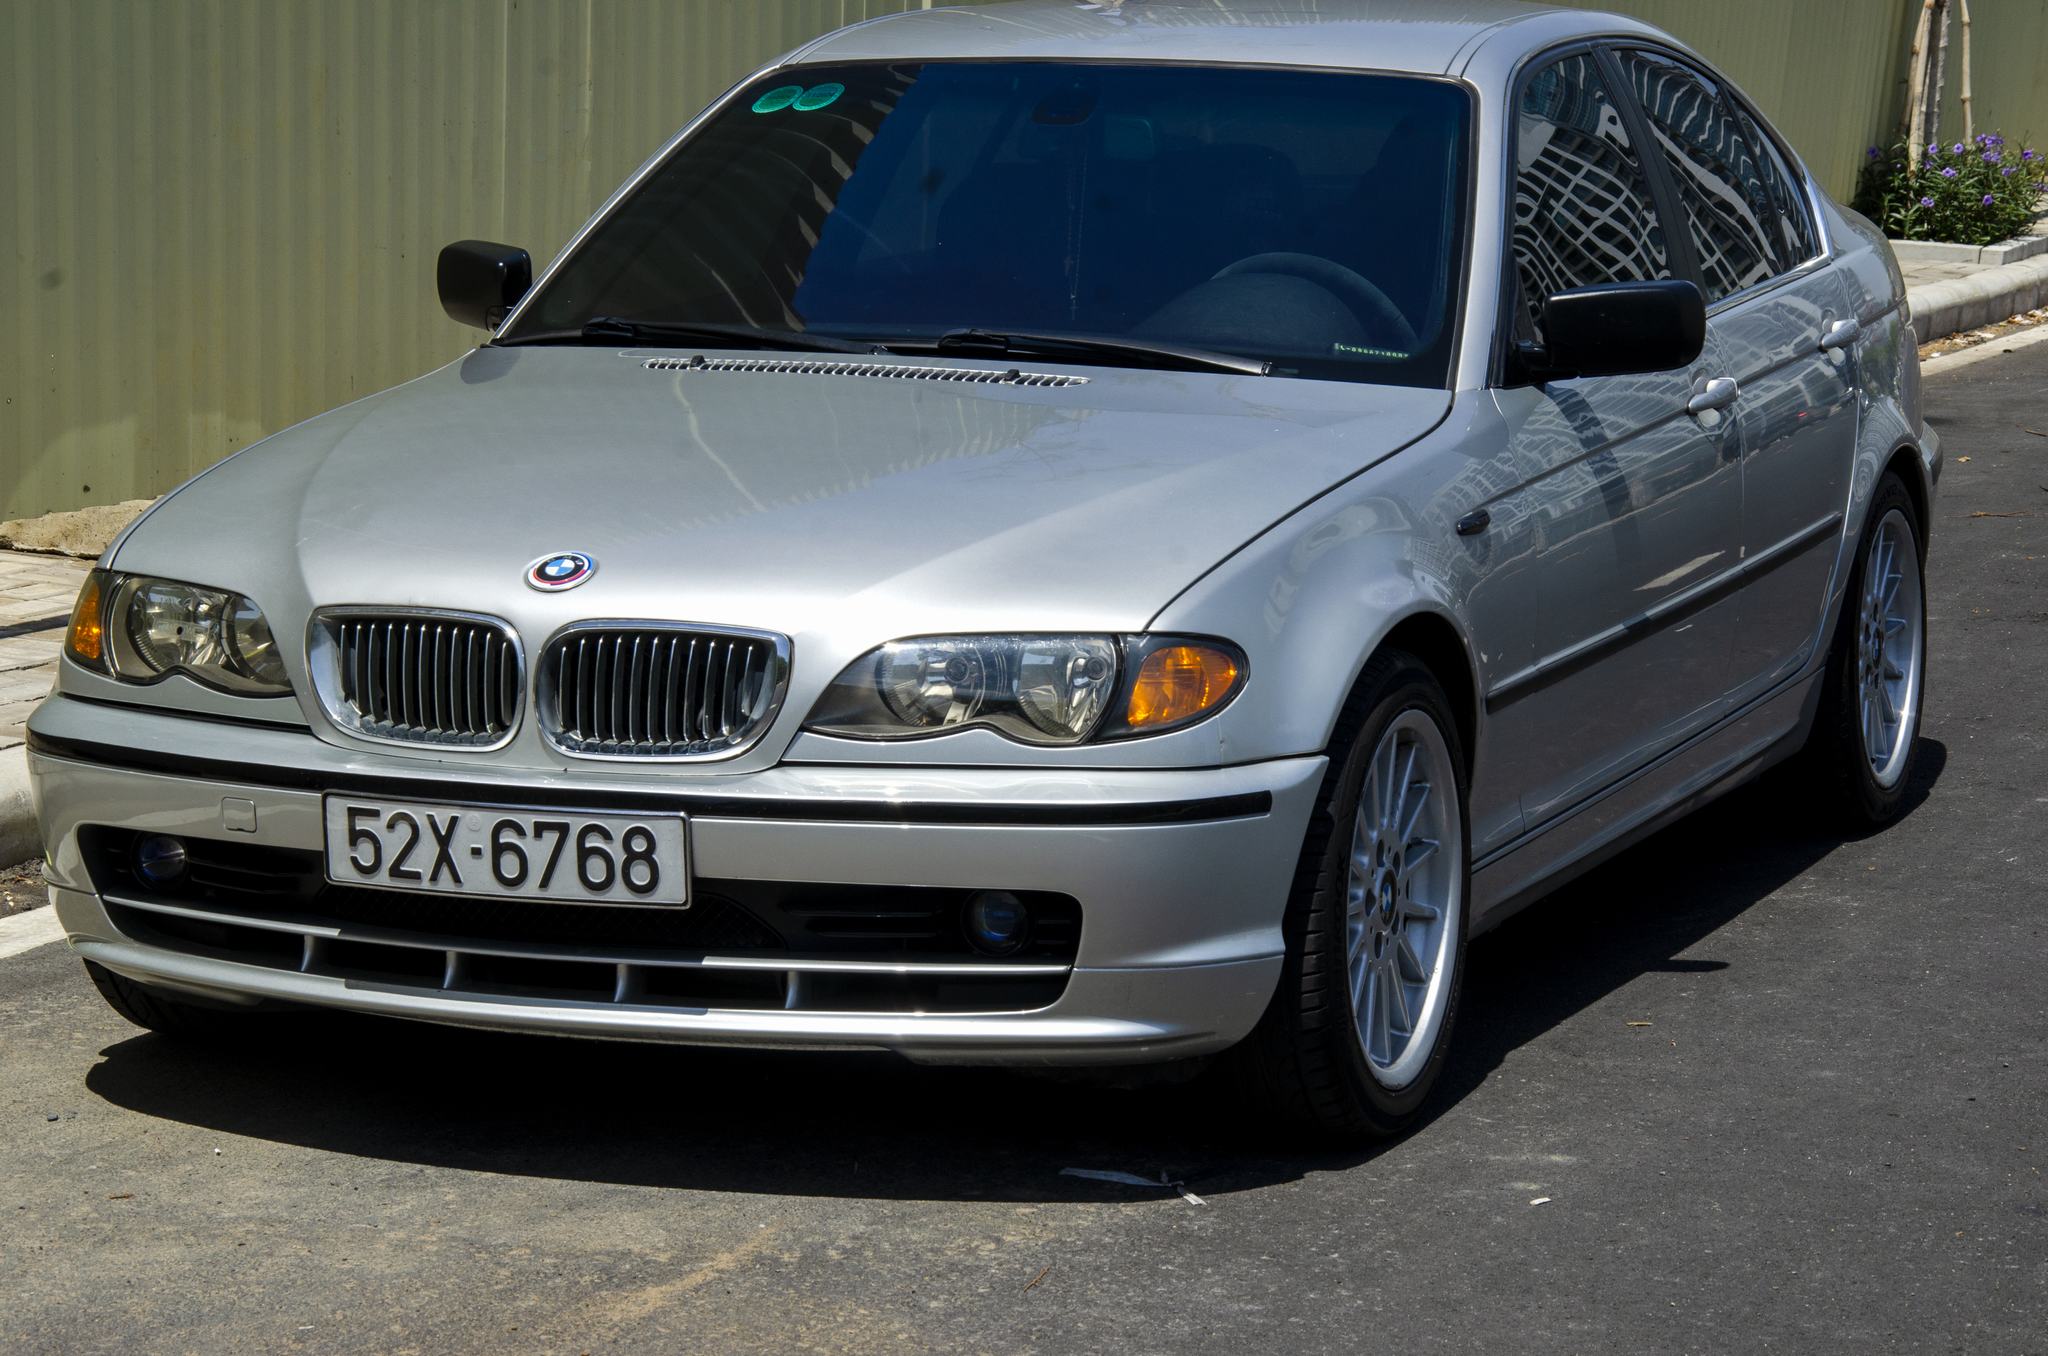 BMW-E46-52X-67687